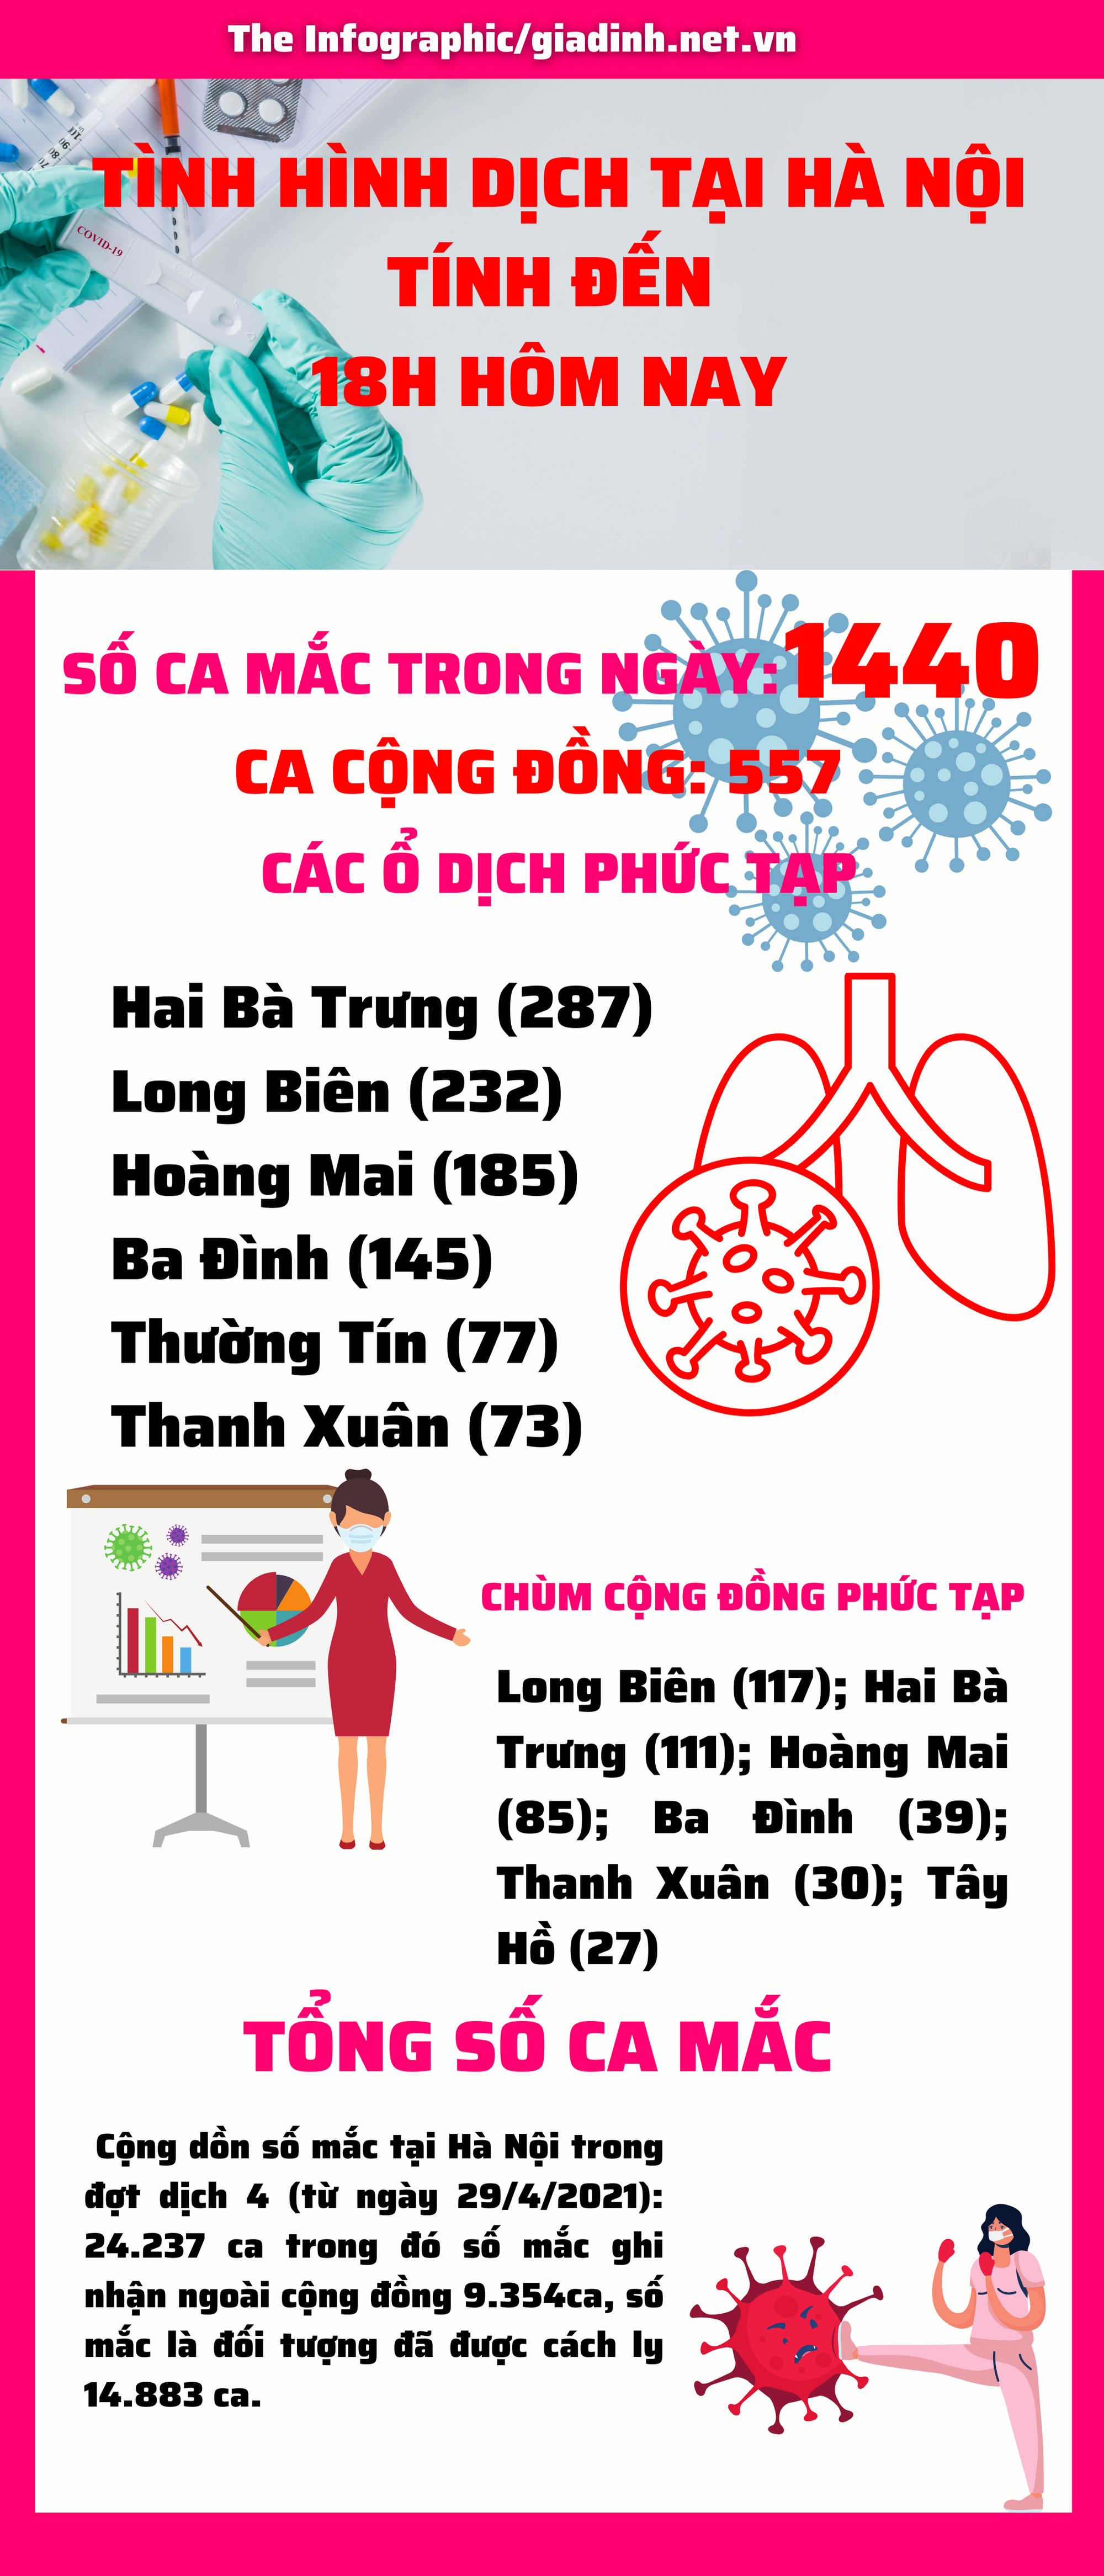 Hà Nội ghi nhận 1440 ca COVID-19 trong 24h với 557 ca cộng đồng - Ảnh 1.